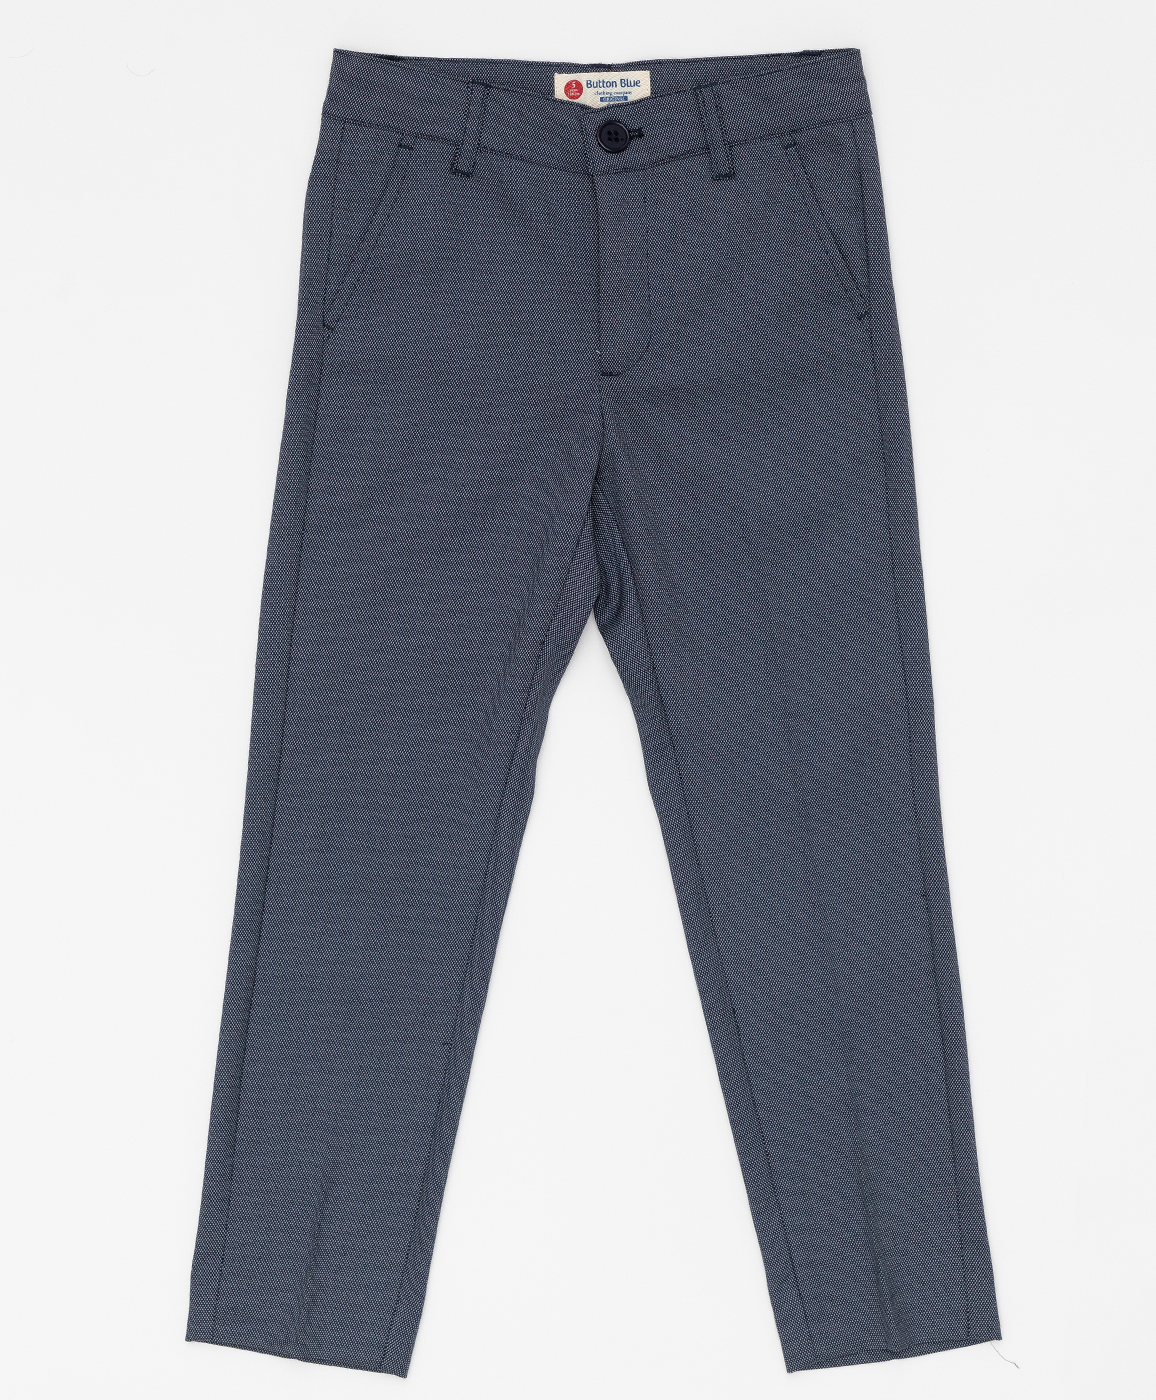 Серые брюки с узором "точка" Button Blue 220BBBMP63010800, размер 122, цвет серый regular fit / прямые - фото 1